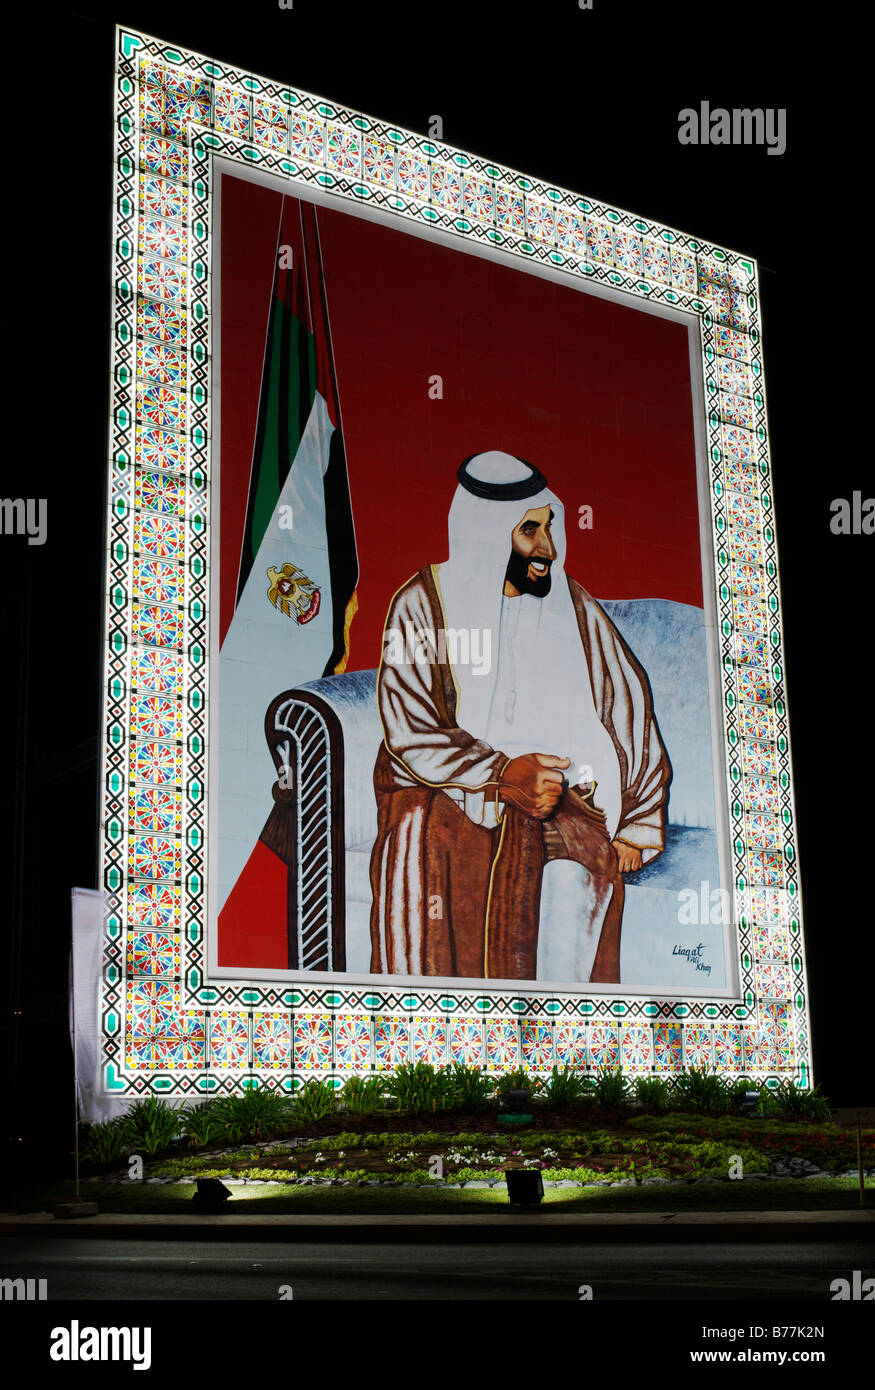 Porträt von Emirat von Abu Dhabi, Vereinigte Arabische Emirate, Scheich Zayed bin Sultan Al Nahyan, Naher Osten, Arabien Stockfoto